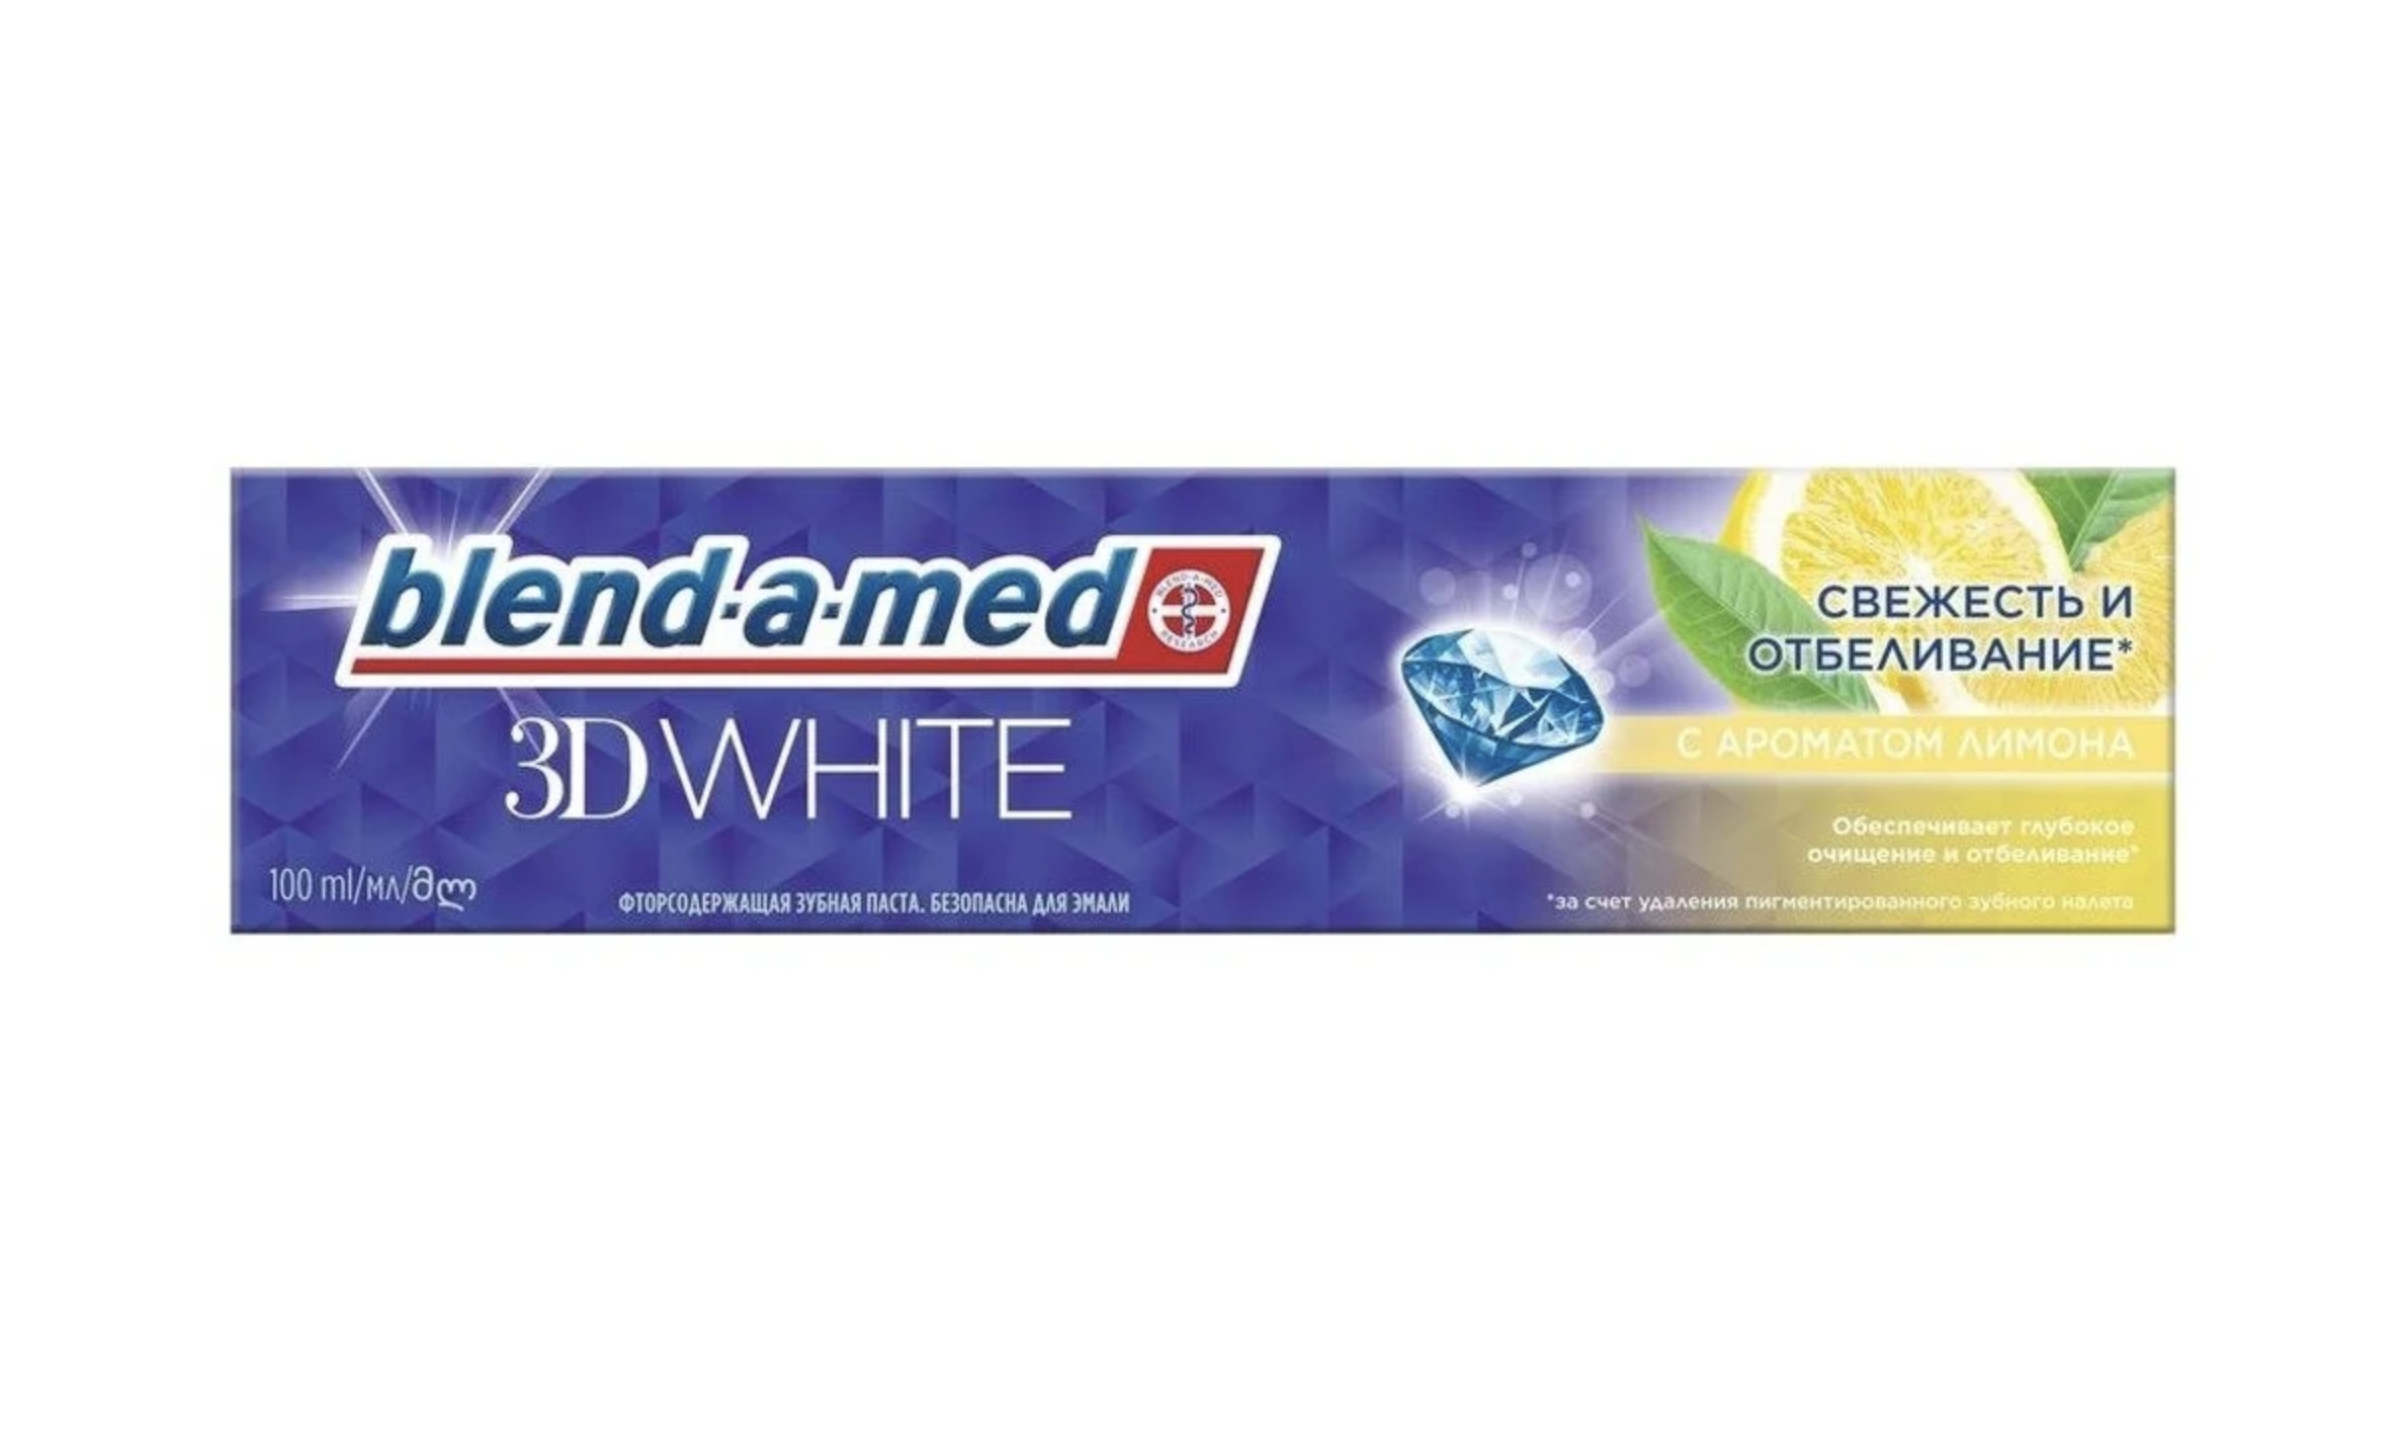  -- / Blend-a-med 3D White -         100 